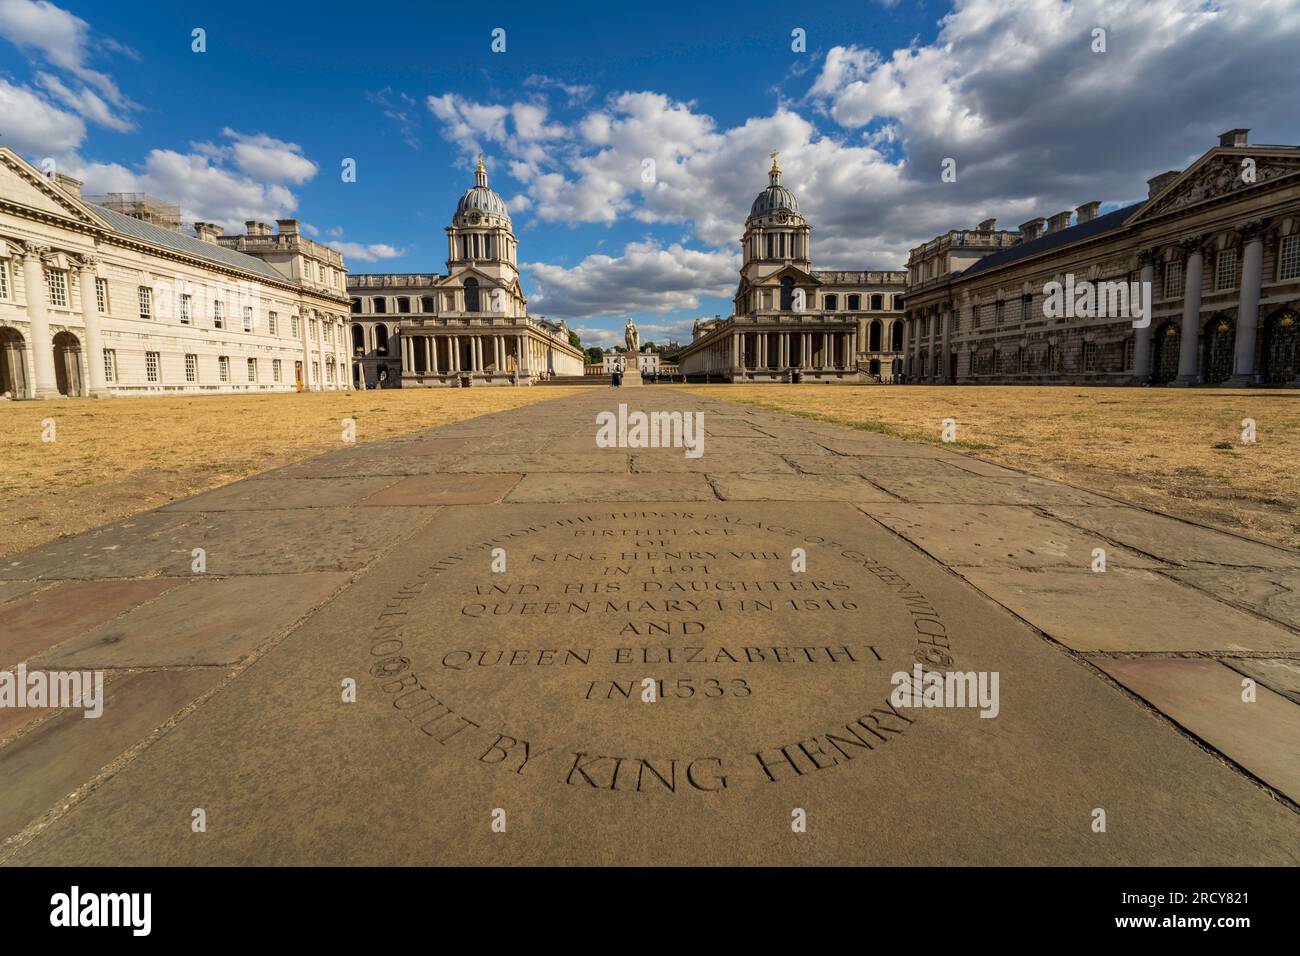 Greenwich Stadtbild. Ein Londoner Stadtteil und der Geburtsort von König Heinrich VIII., Königin Mary I. und Elizabeth I. Besuchen Sie die königlichen Museen und das Observatorium. Stockfoto